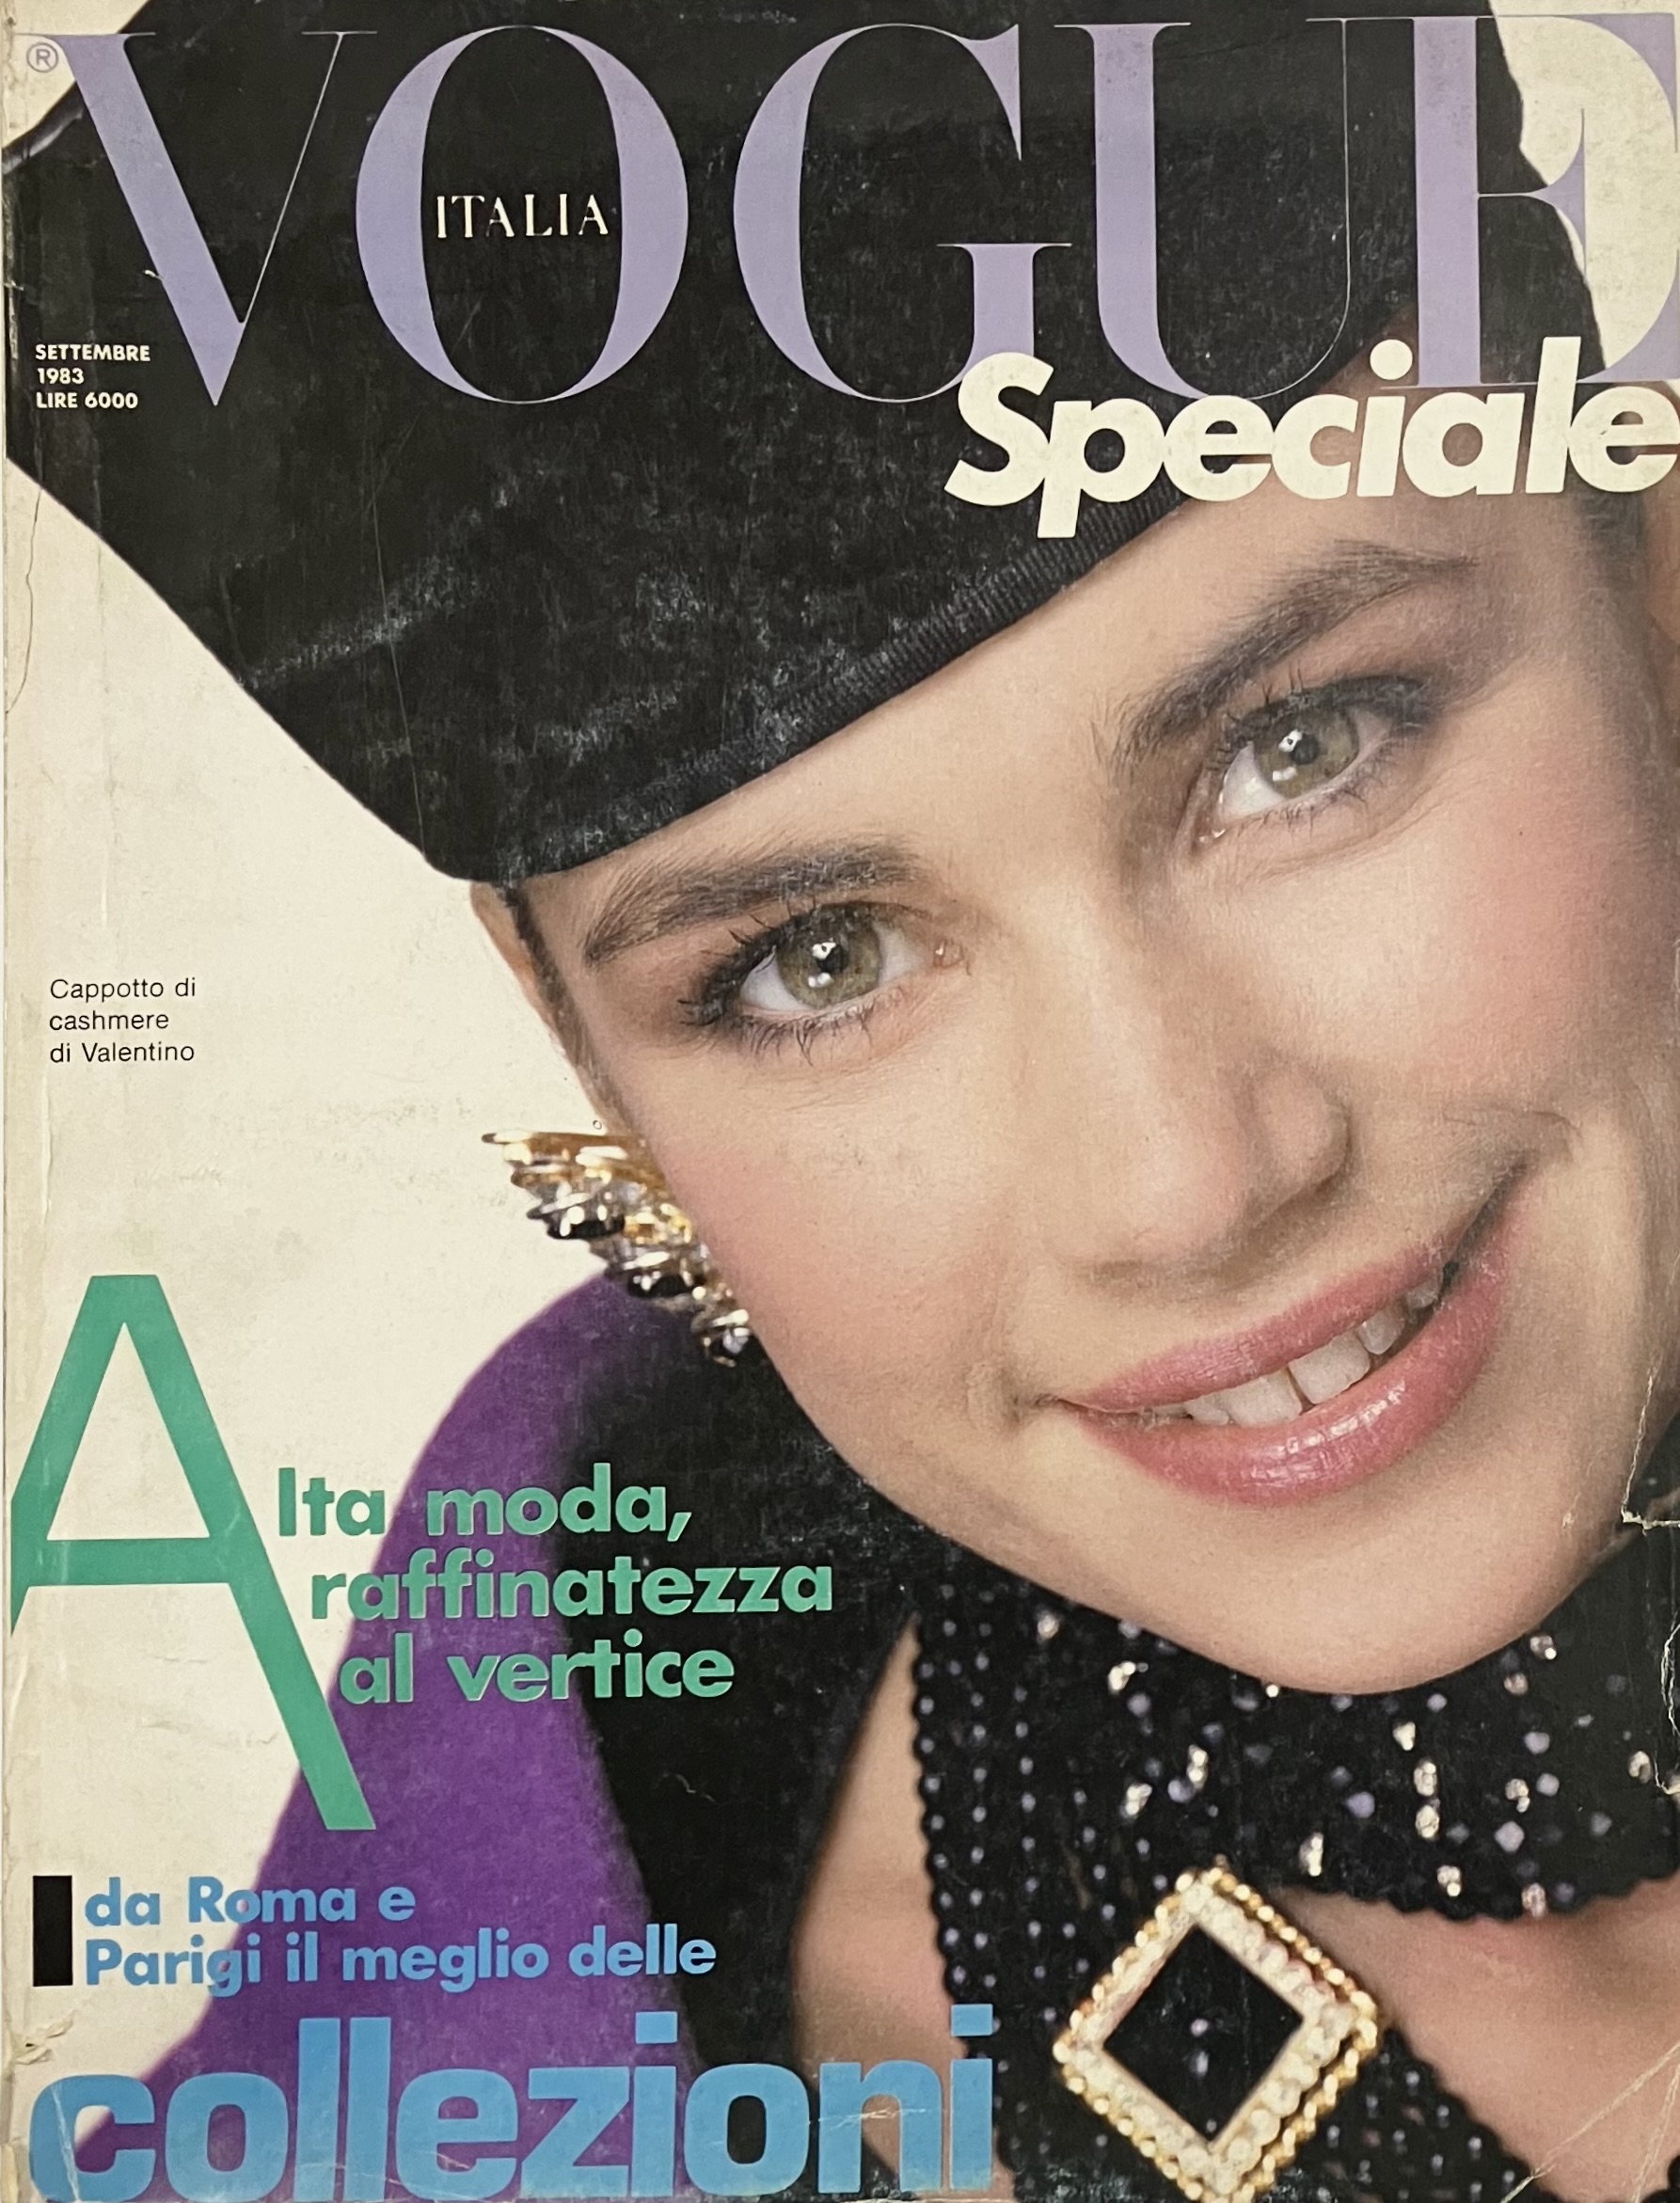 Vogue Italia Speciale N. 3. Settembre 1983